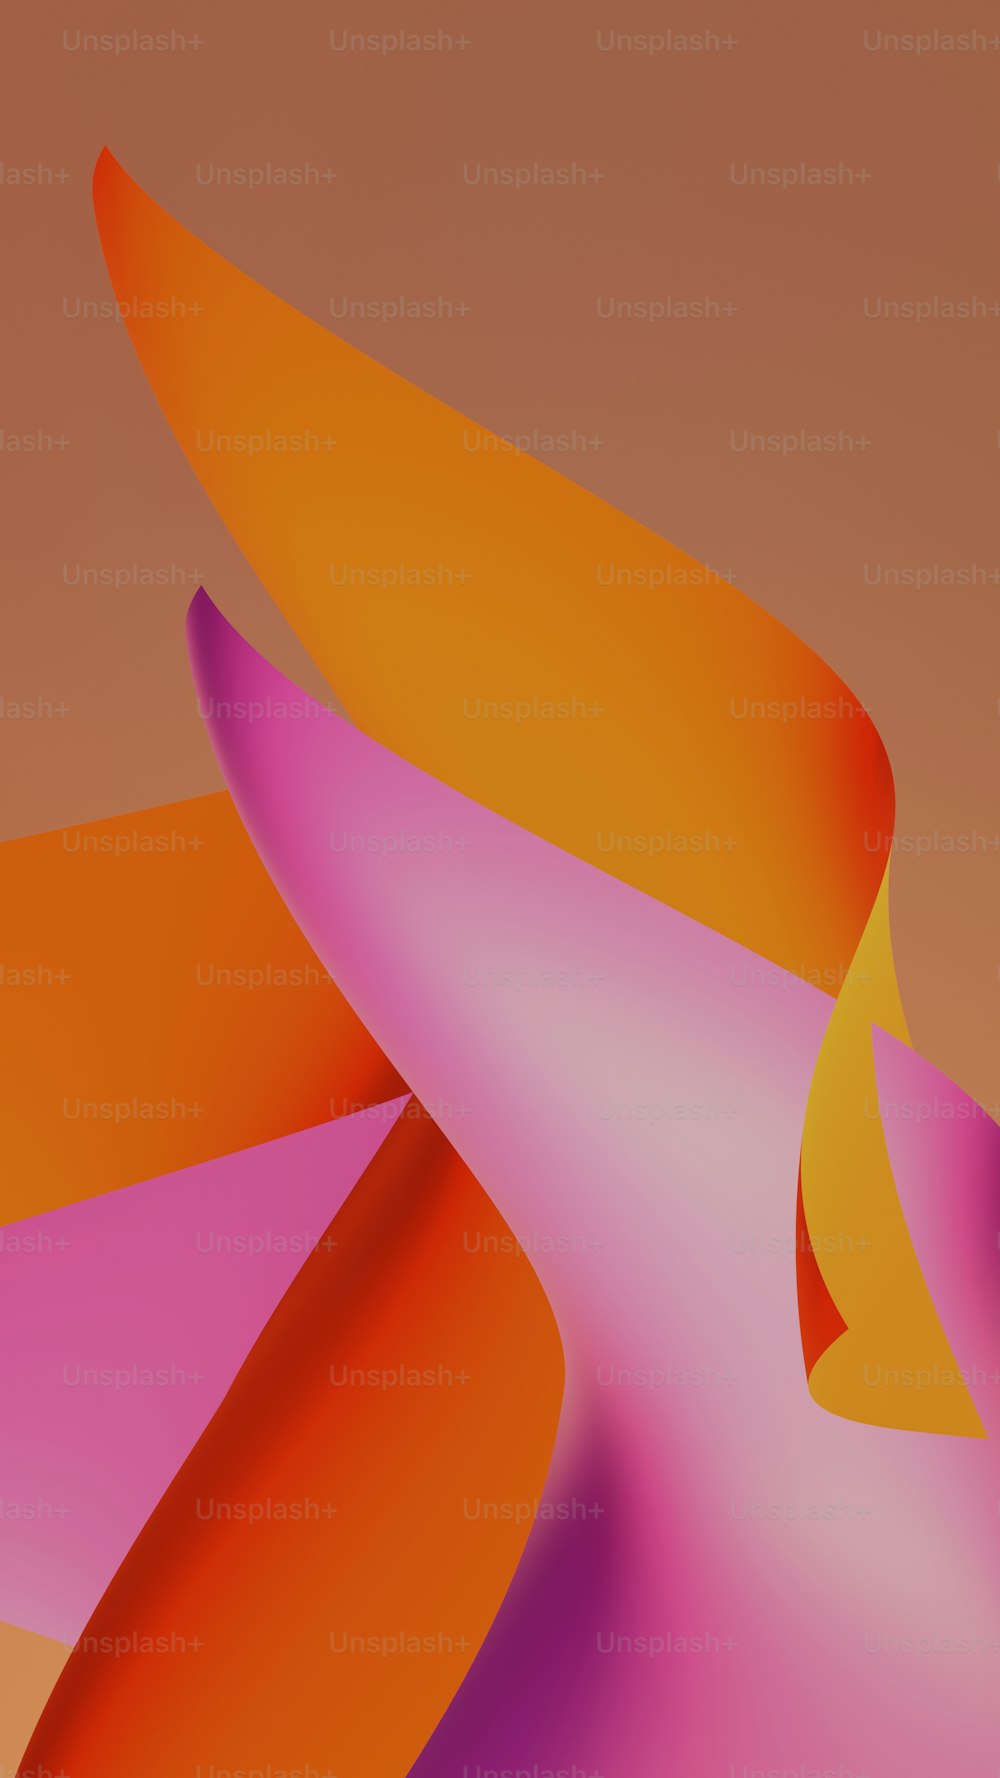 Un diseño abstracto naranja y rosa sobre un fondo marrón